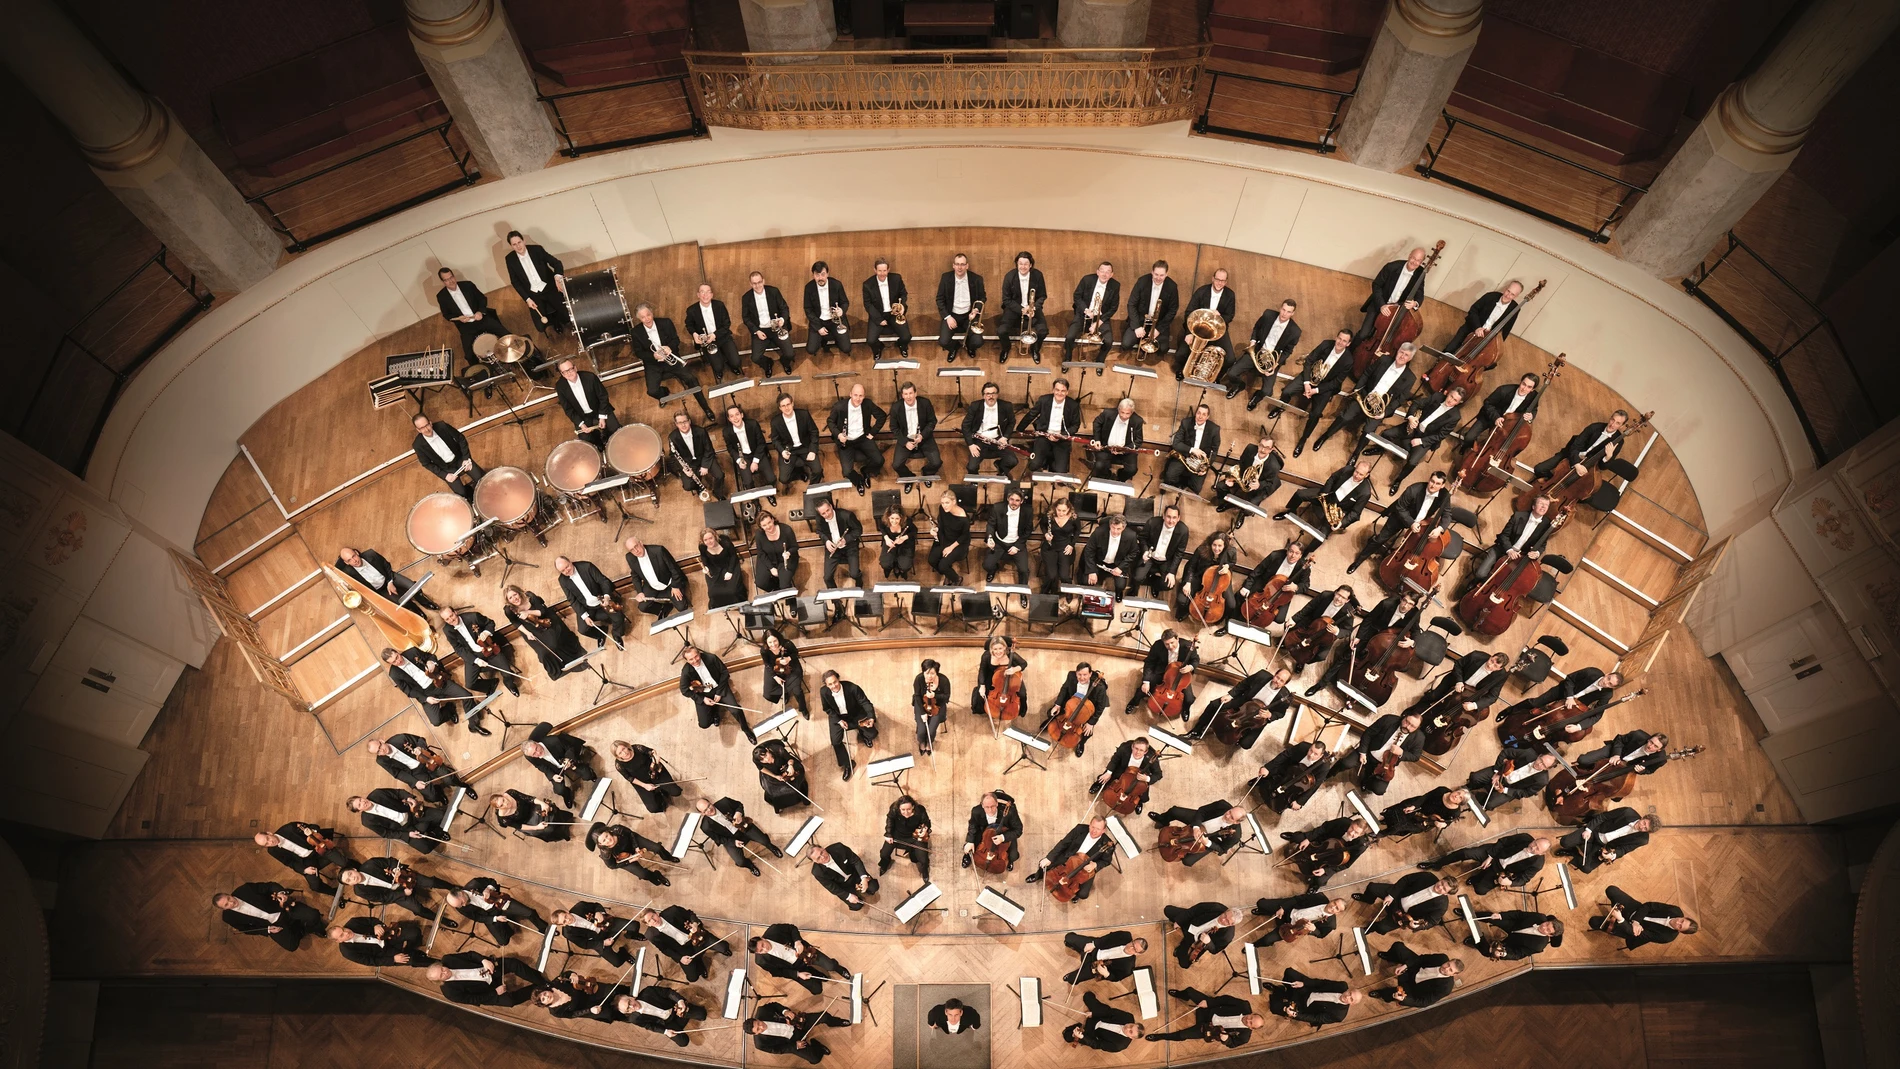 Orquesta Sinfónica de Viena